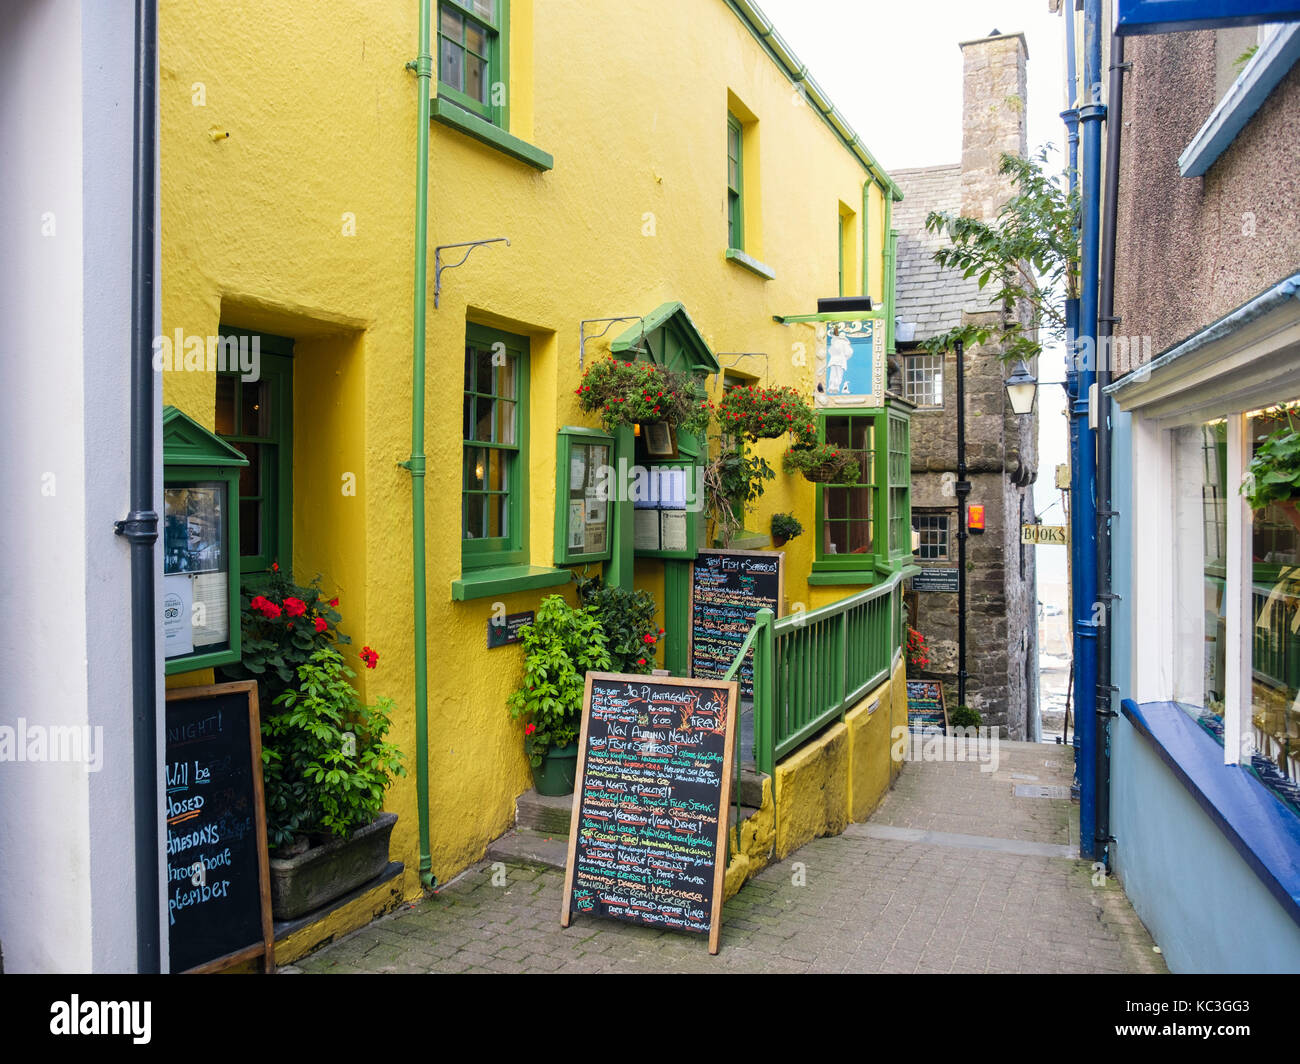 Die plantagenet House Restaurant und die Tudor Merchant House auf schmaler Spur. Kai Hügel, Tenby, Pembrokeshire, South Wales, UK, Großbritannien Stockfoto